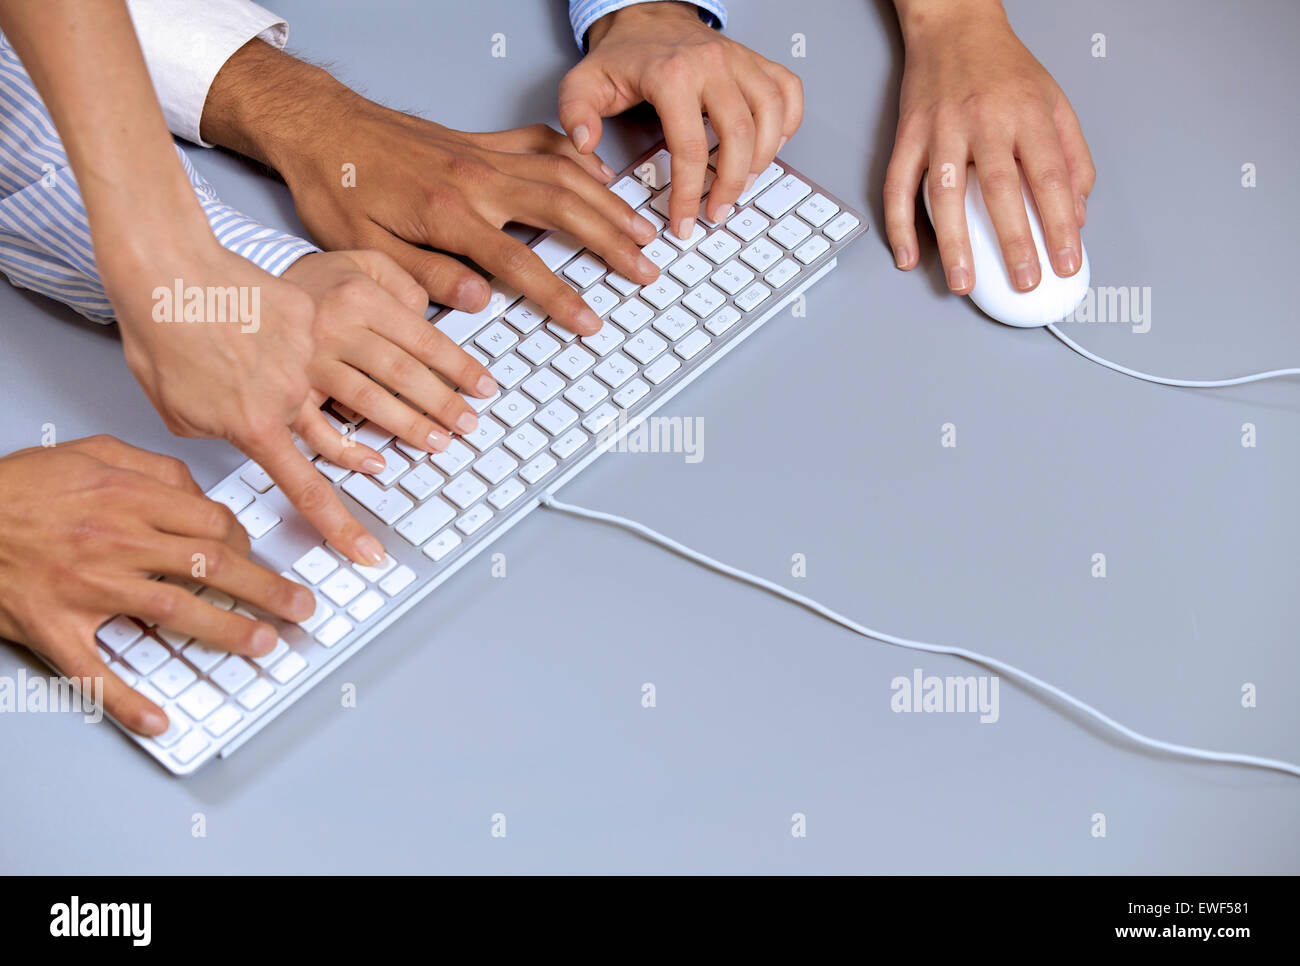 Des mains sur un clavier d'ordinateur avec une main à l'aide de la souris d'ordinateur Banque D'Images